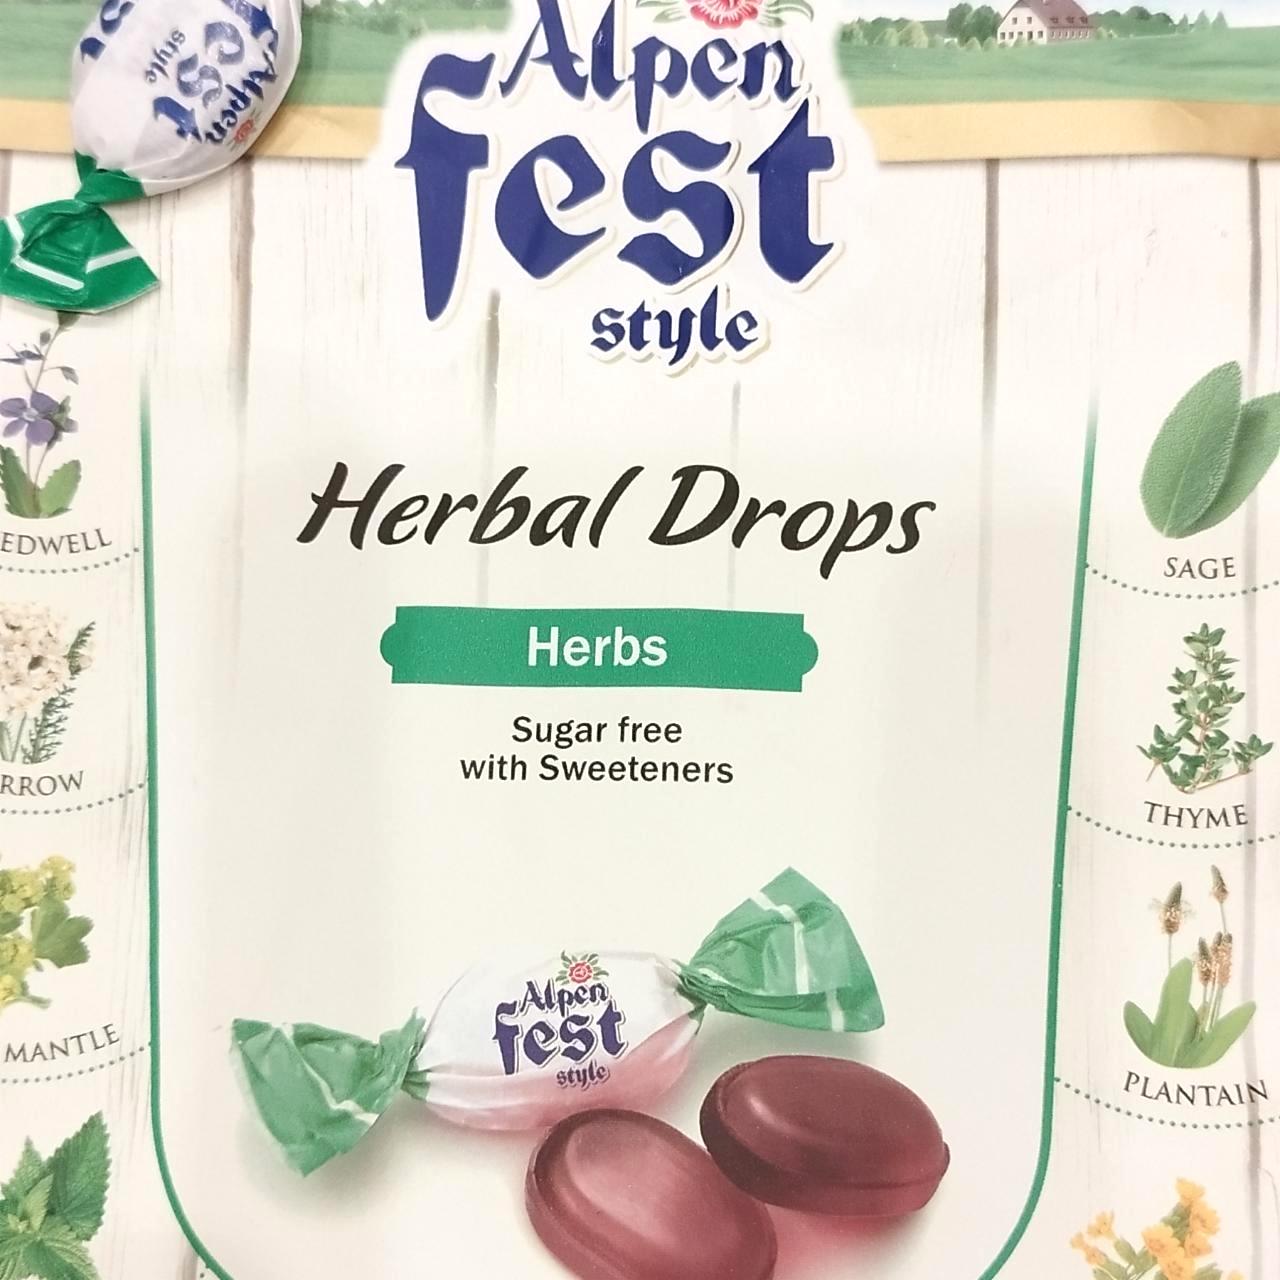 Képek - Alpen fest style Herbal Drops